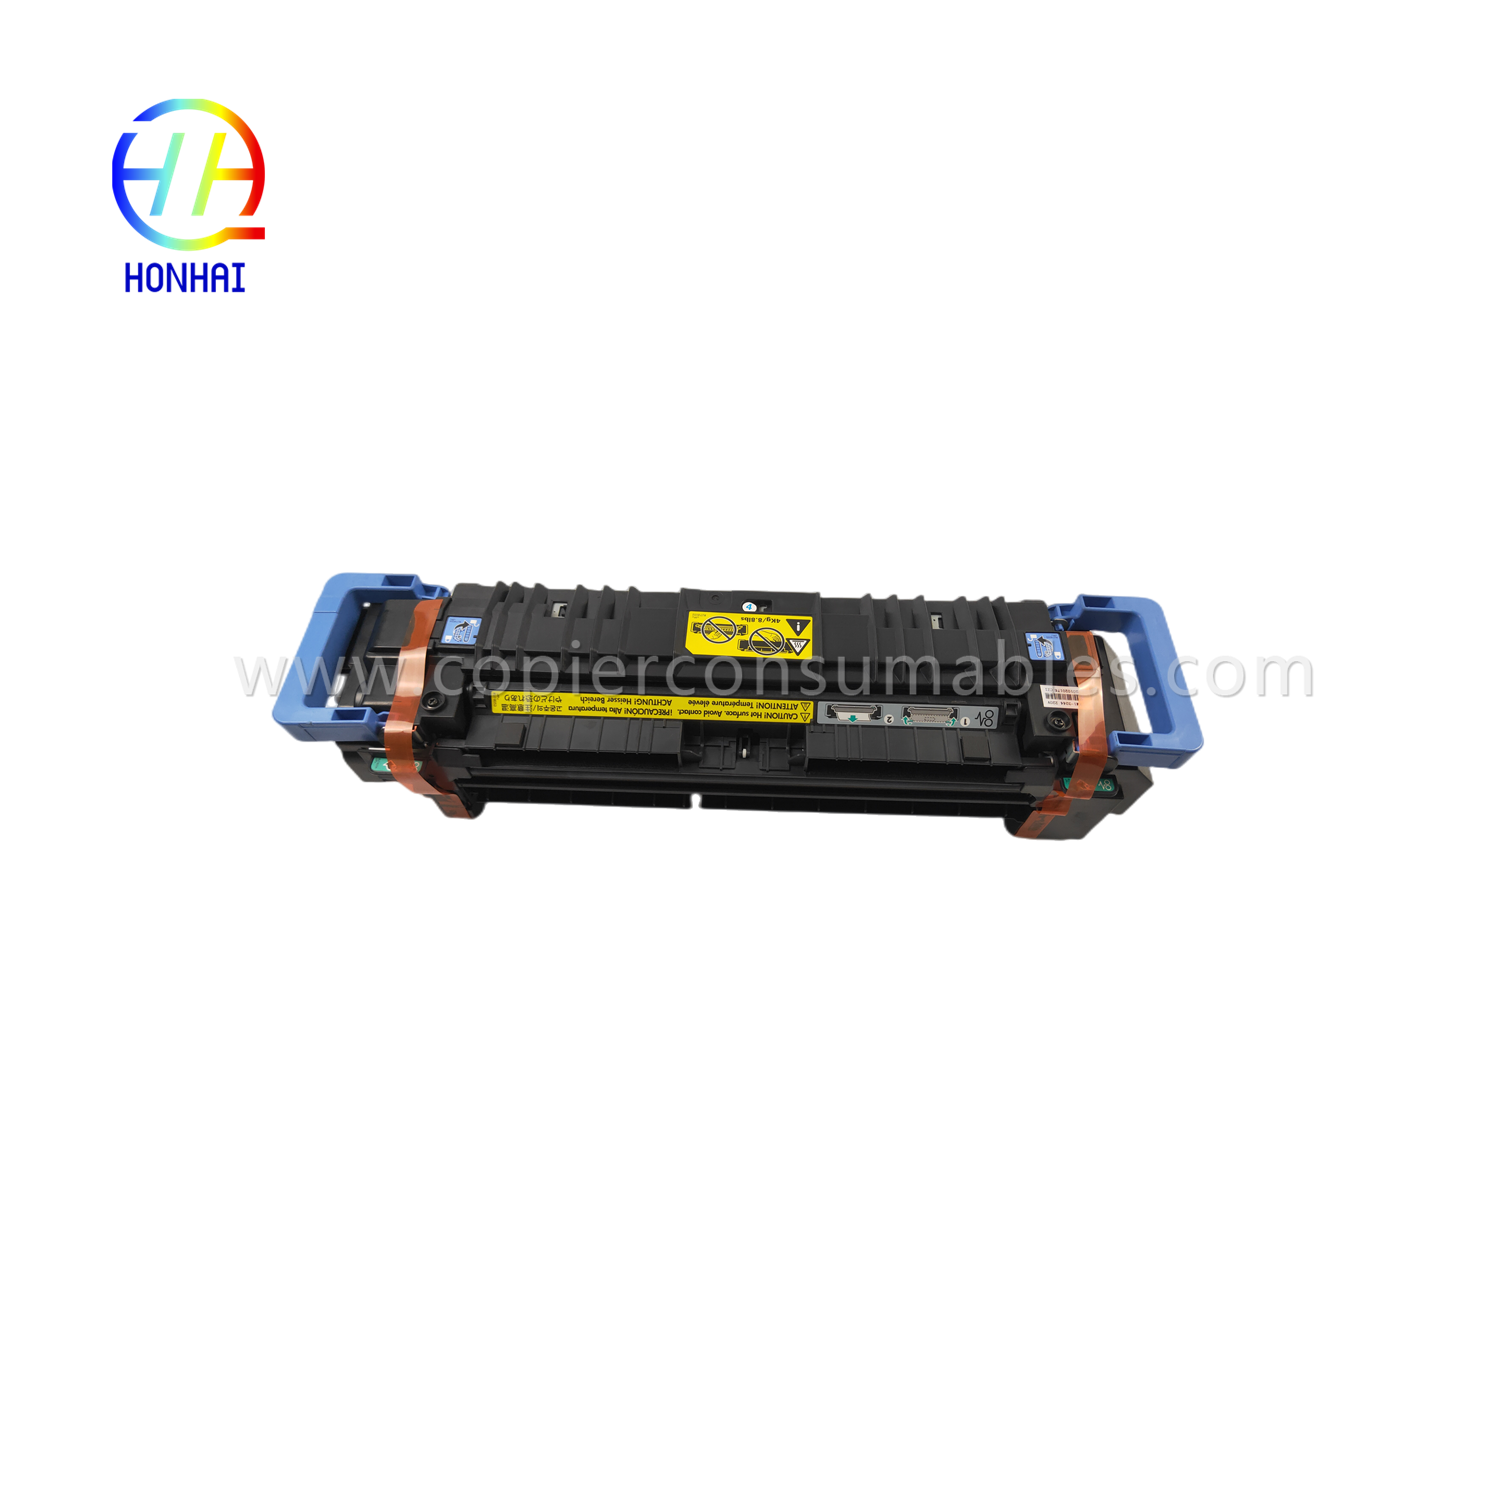 Fikseringsenhet for HP M855 for HP M855 M880 M855dn M855xh M880z M880z C1N54-67901 C1N58-67901 Fusing Heating Fiksing Assy